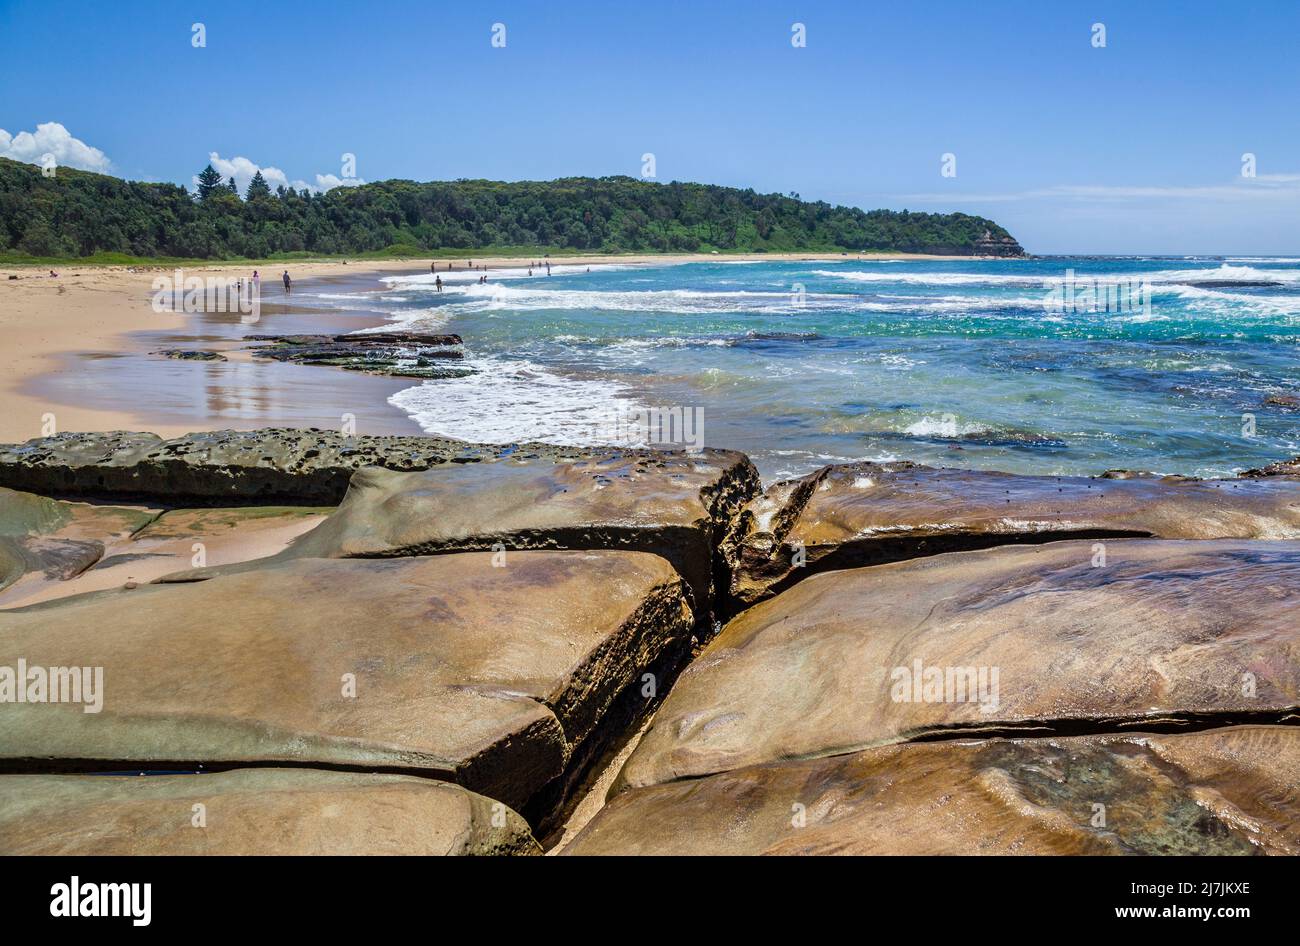 Plataforma de roca al sur de Bateau Bay Beach expuesta a la marea baja, Costa Central de Nueva Gales del Sur, Australia Foto de stock